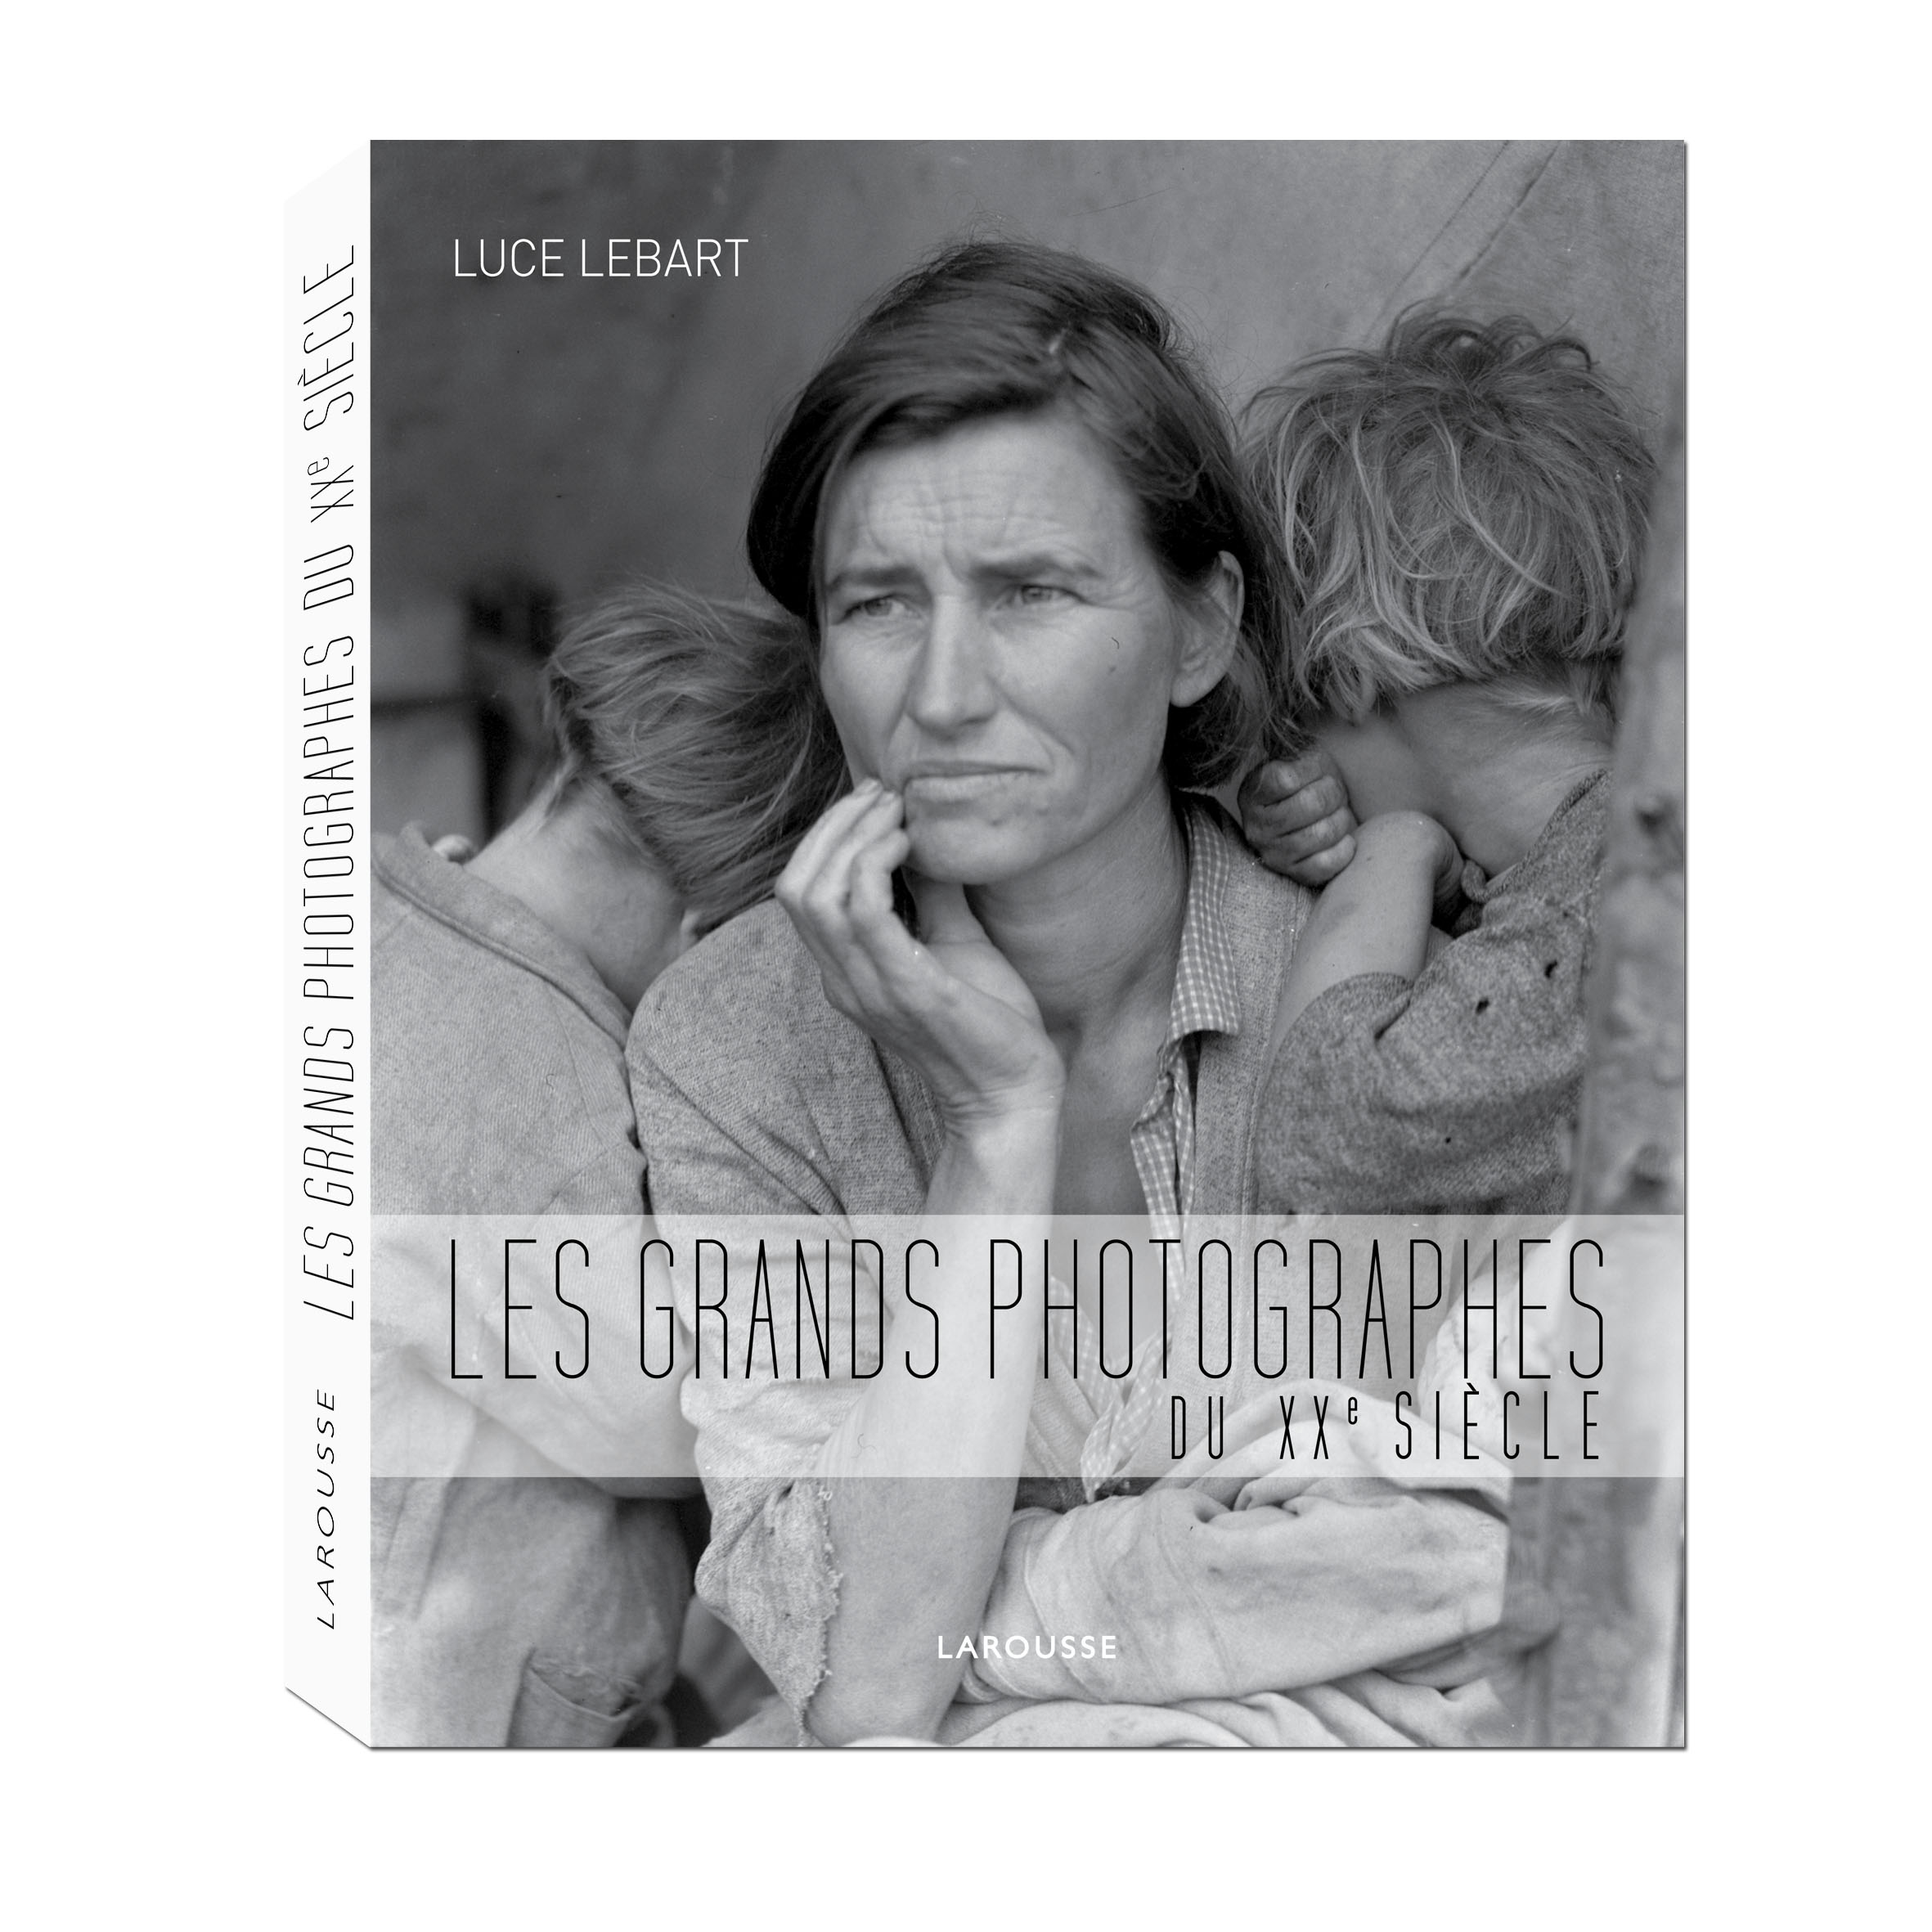 LES GRANDS PHOTOGRAPHES DU XXe Sicle